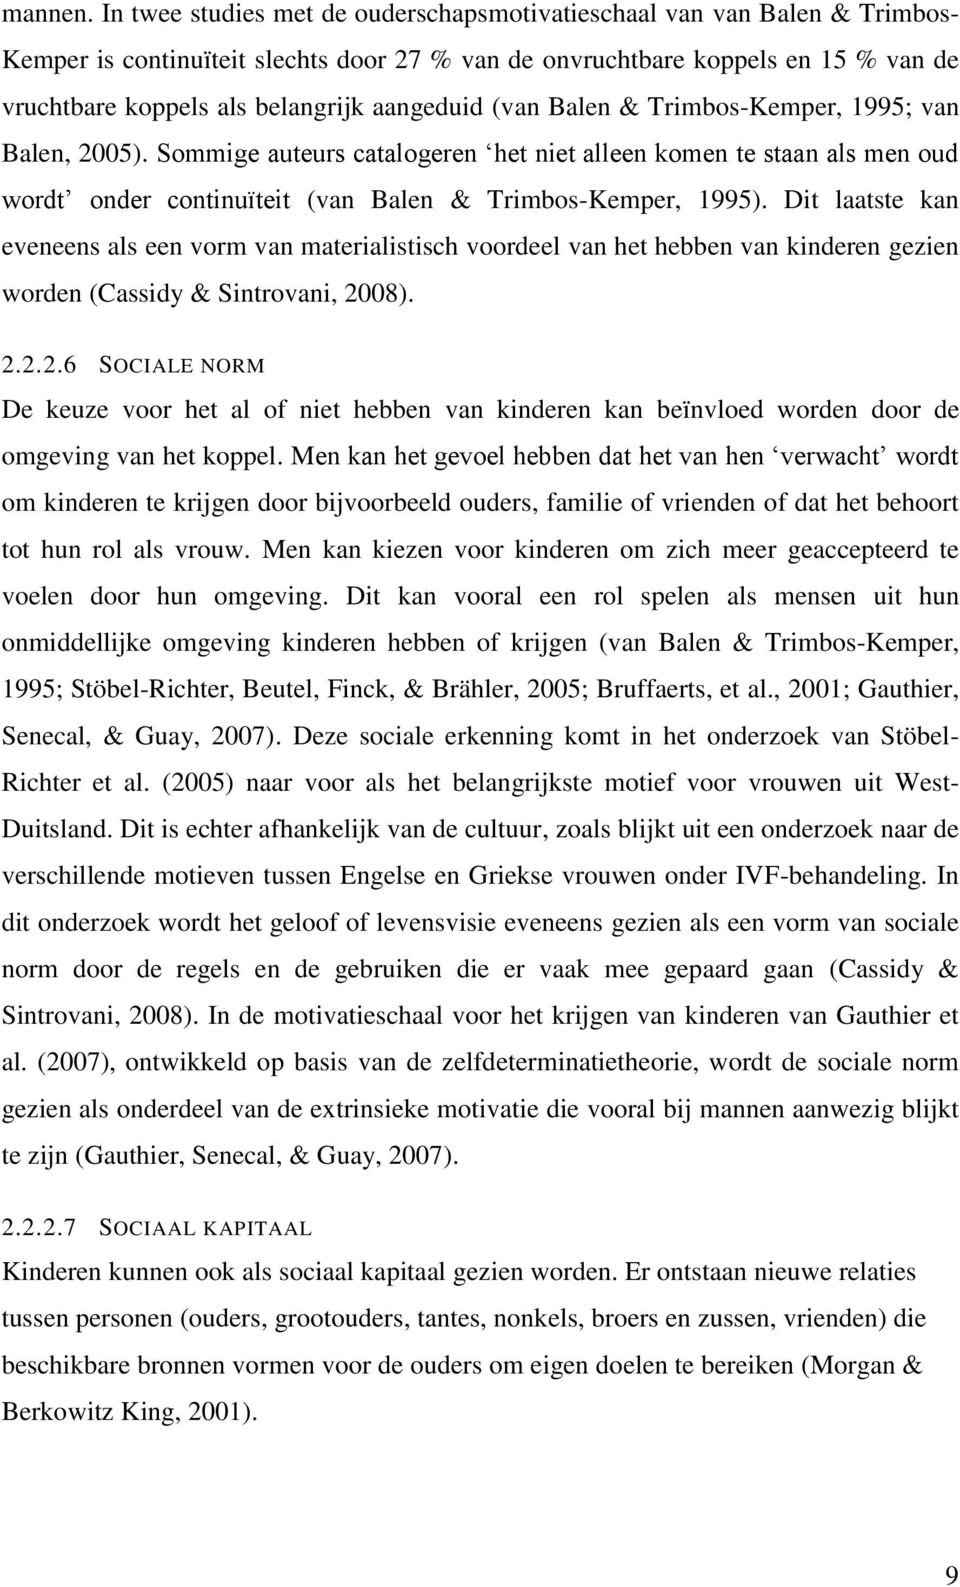 aangeduid (van Balen & Trimbos-Kemper, 1995; van Balen, 2005). Sommige auteurs catalogeren het niet alleen komen te staan als men oud wordt onder continuïteit (van Balen & Trimbos-Kemper, 1995).